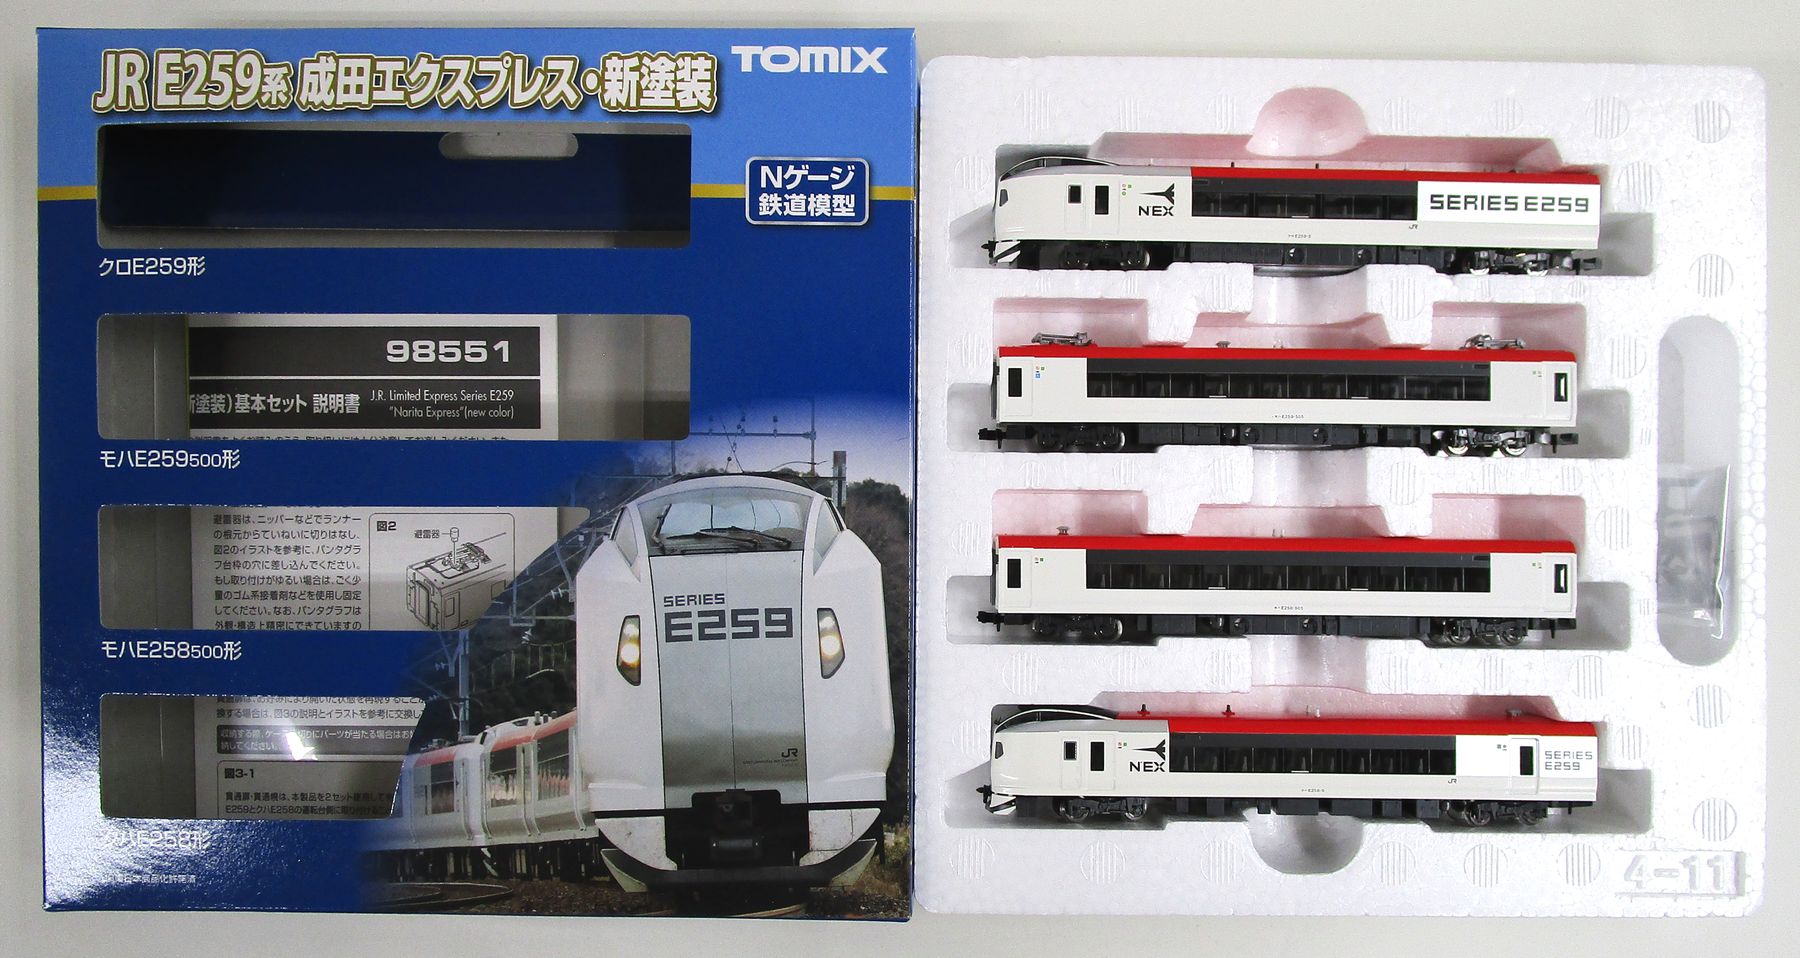 公式販促TOMIX E259系（成田エクスプレス）基本・増結6両セット TN交換済 新品同様・美品 特急形電車